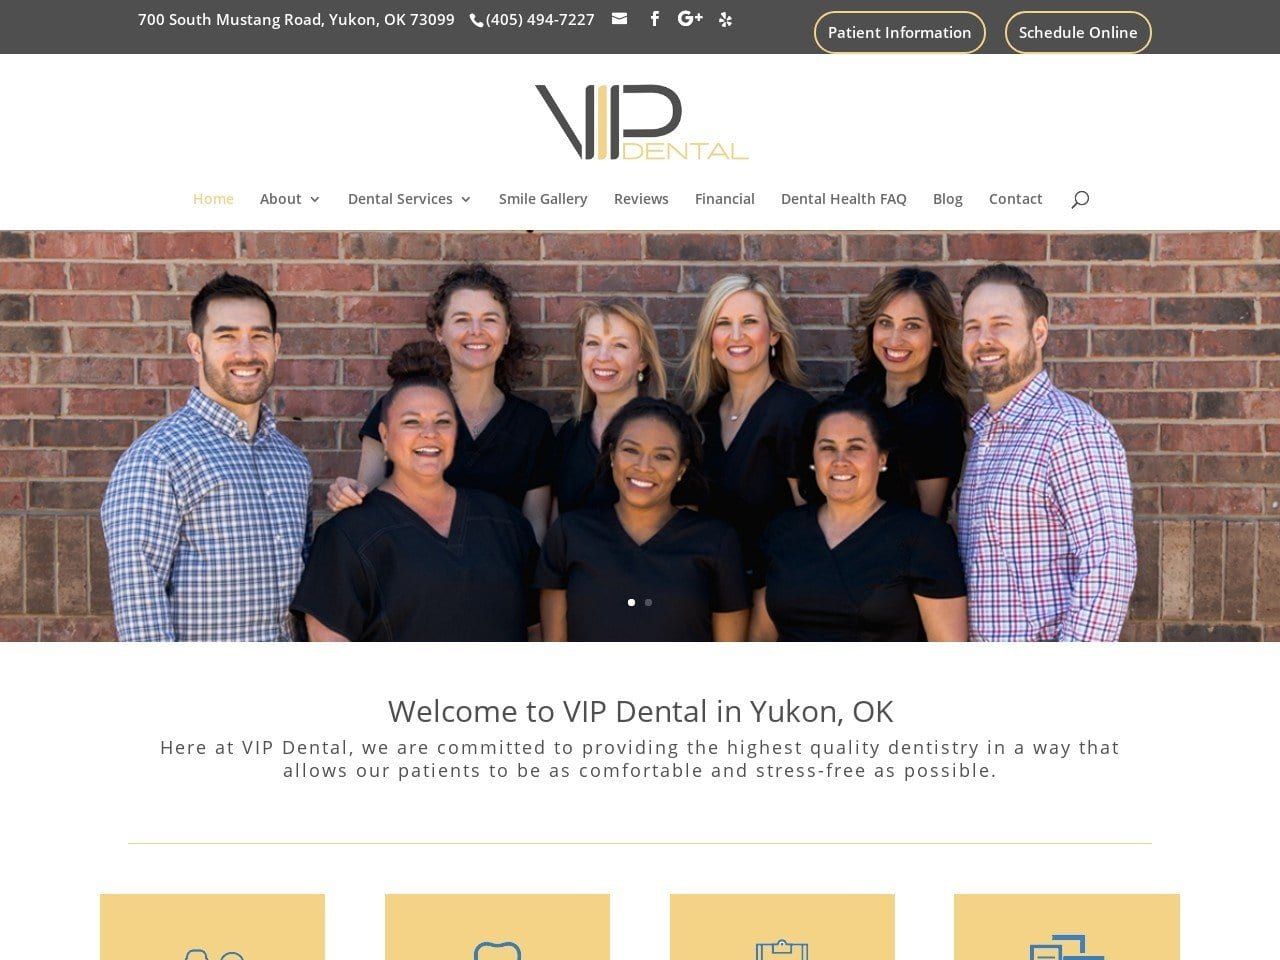 V.I.P. Dental Website Screenshot from vipdentalok.com